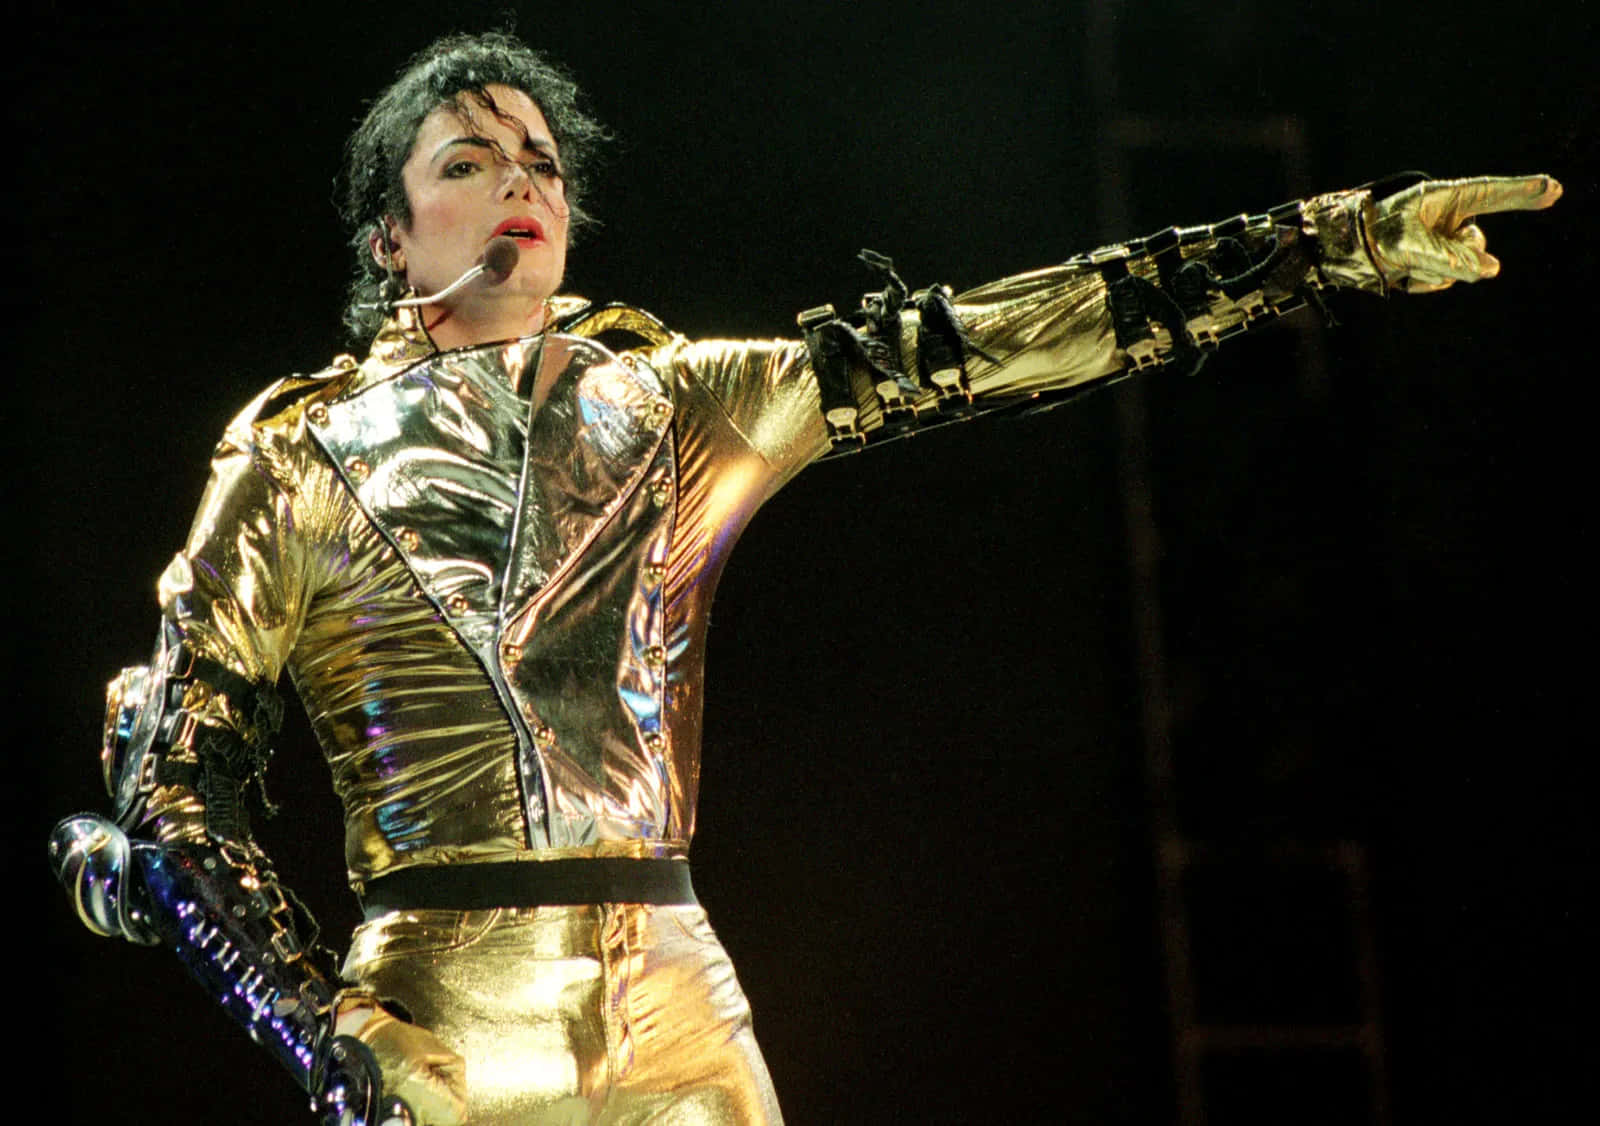 Michael Jackson Moonwalking - Music Legend